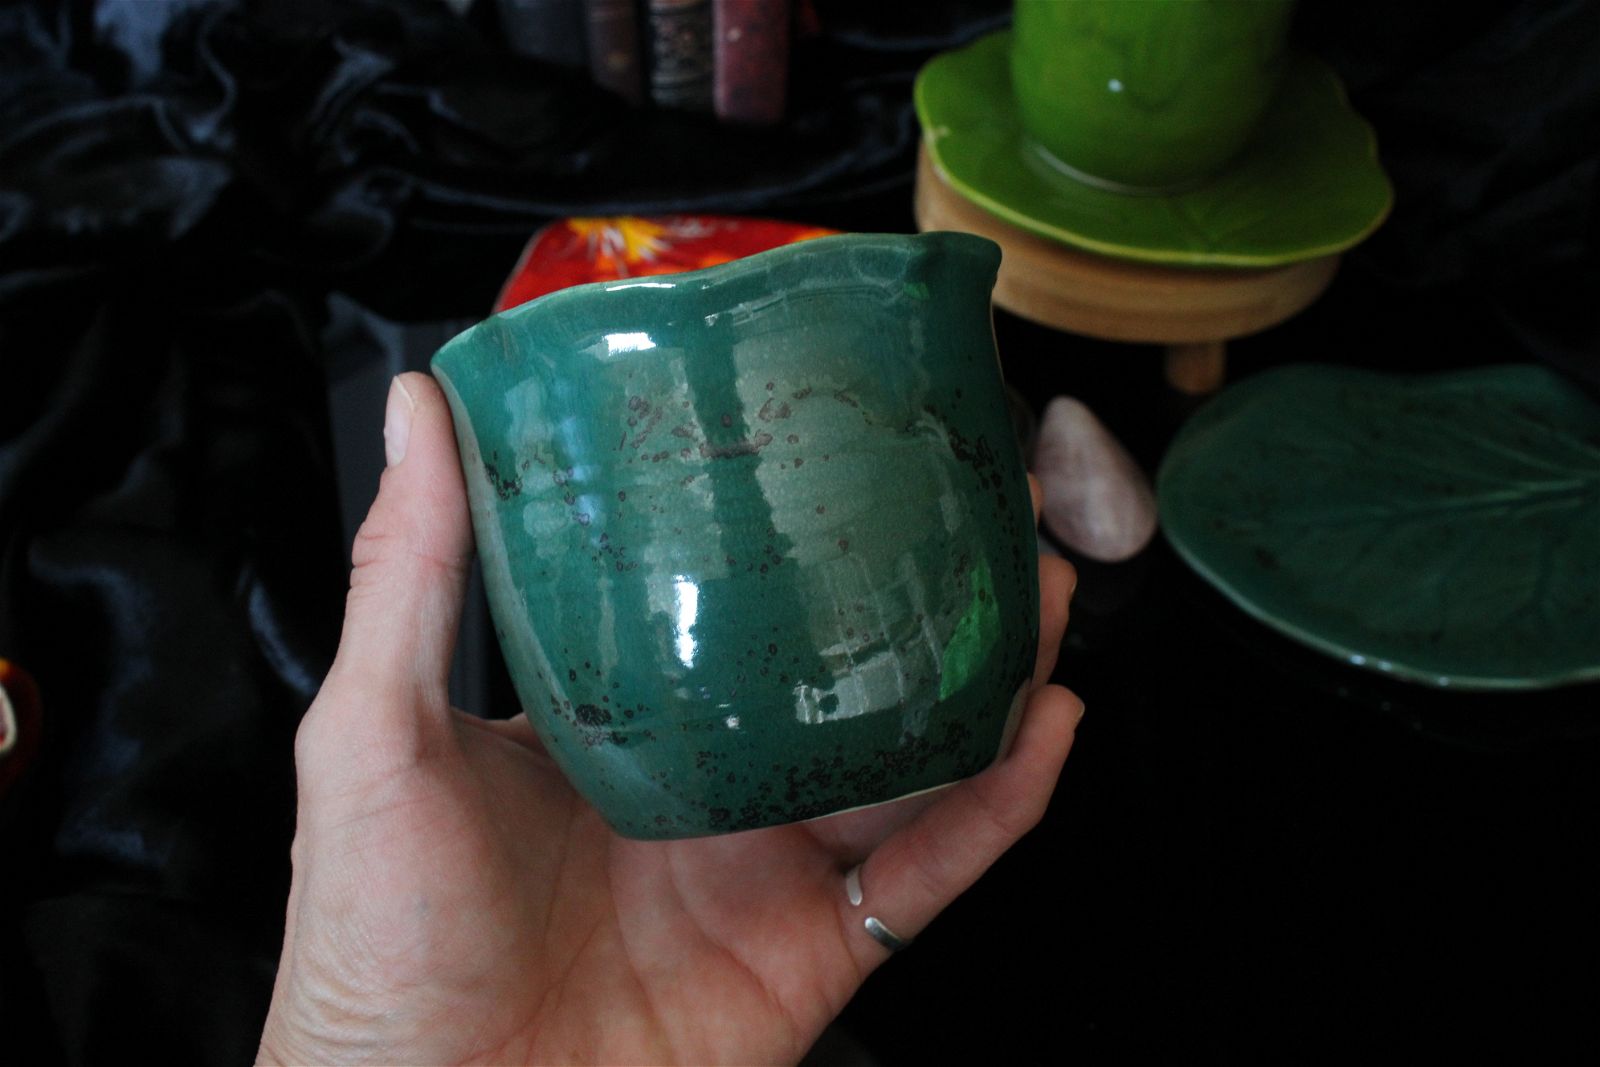 Enorme Lot poteries minéraux unique et original "un thé entre copines" - Aurore Lune 